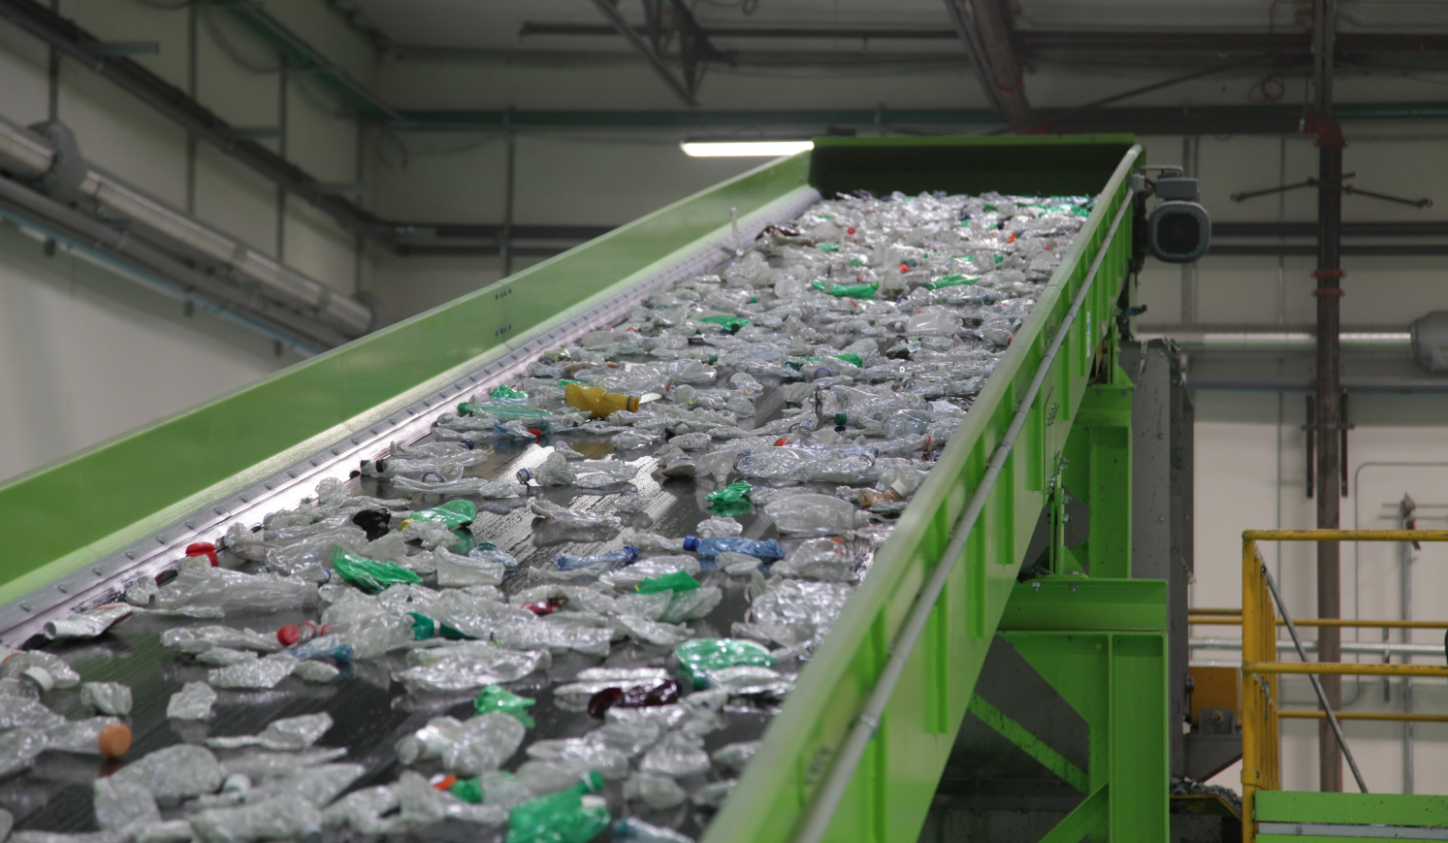 Переработка пластика как бизнес в россии: с чего начать, и поиск сырья, подлежащего утилизации, расчеты и финансовый план производства гранул, примеры заводов